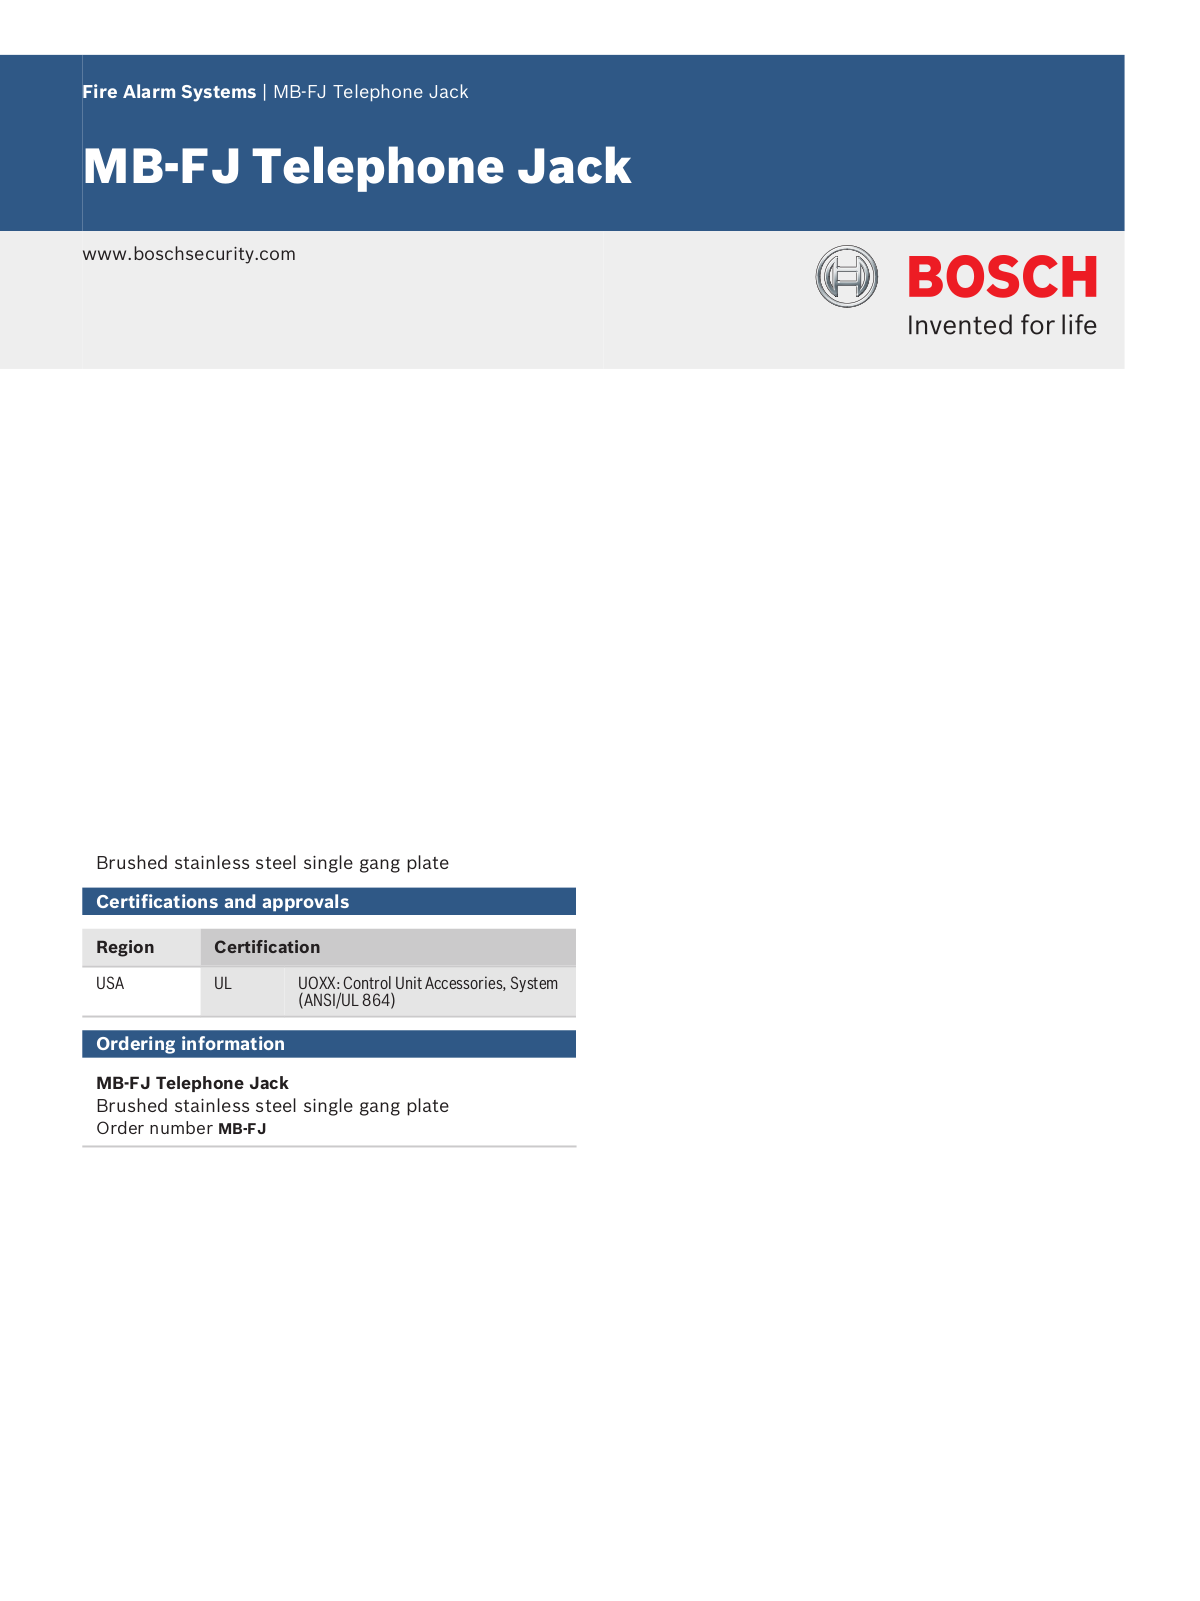 Bosch MB-FJ Specsheet